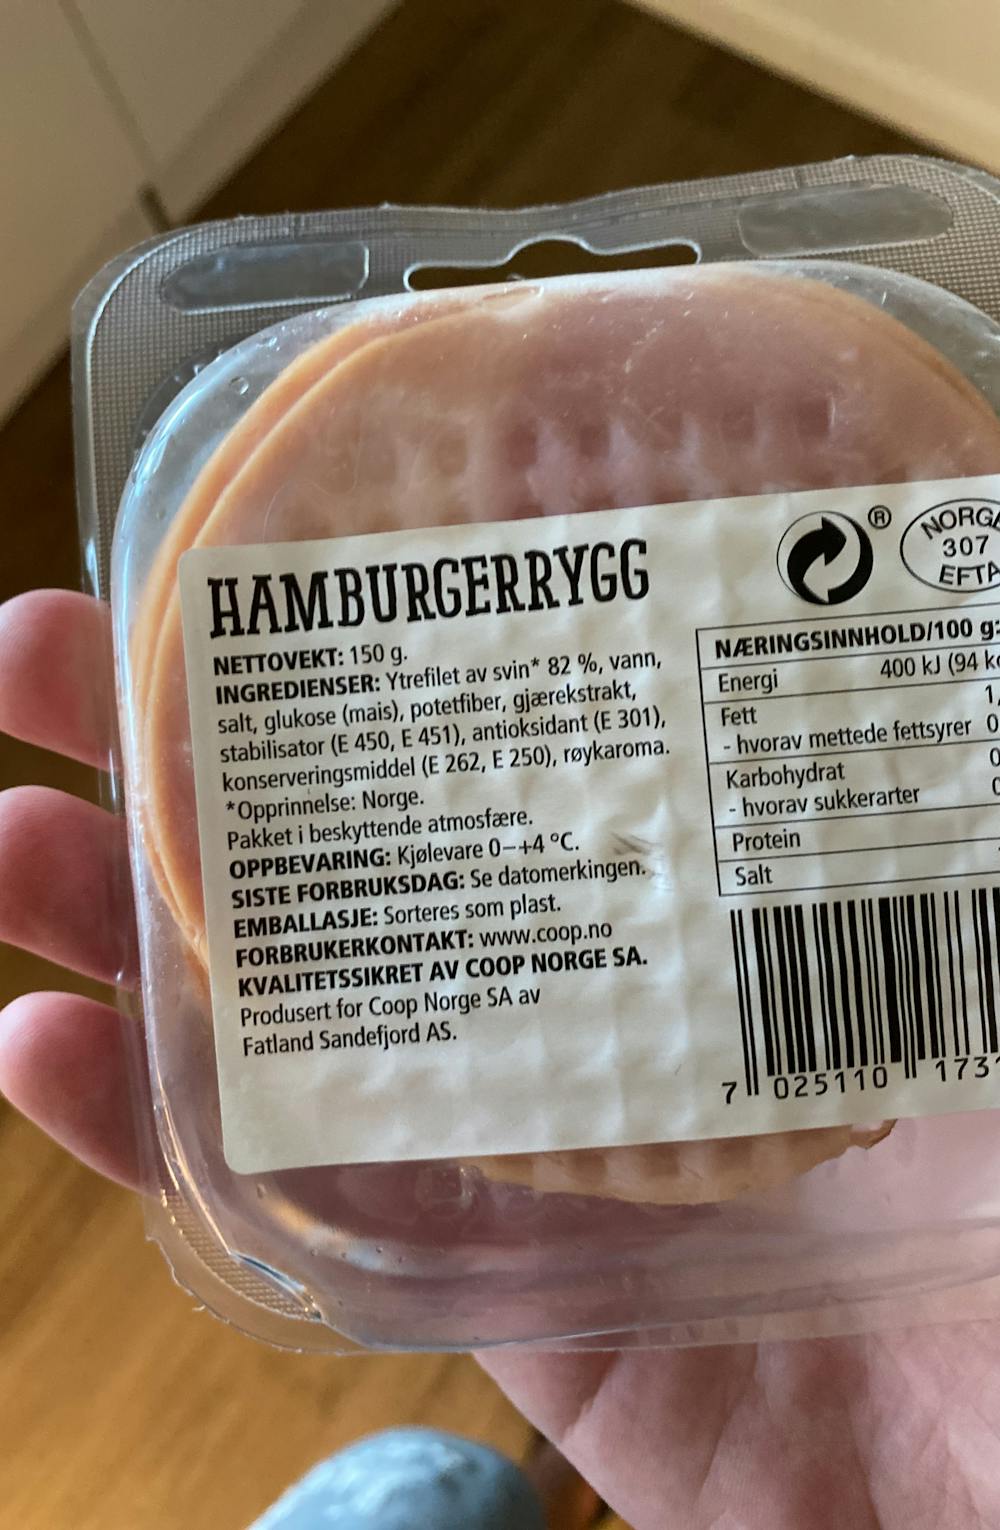 Ingrediensliste - Hamburgerrygg, Coop